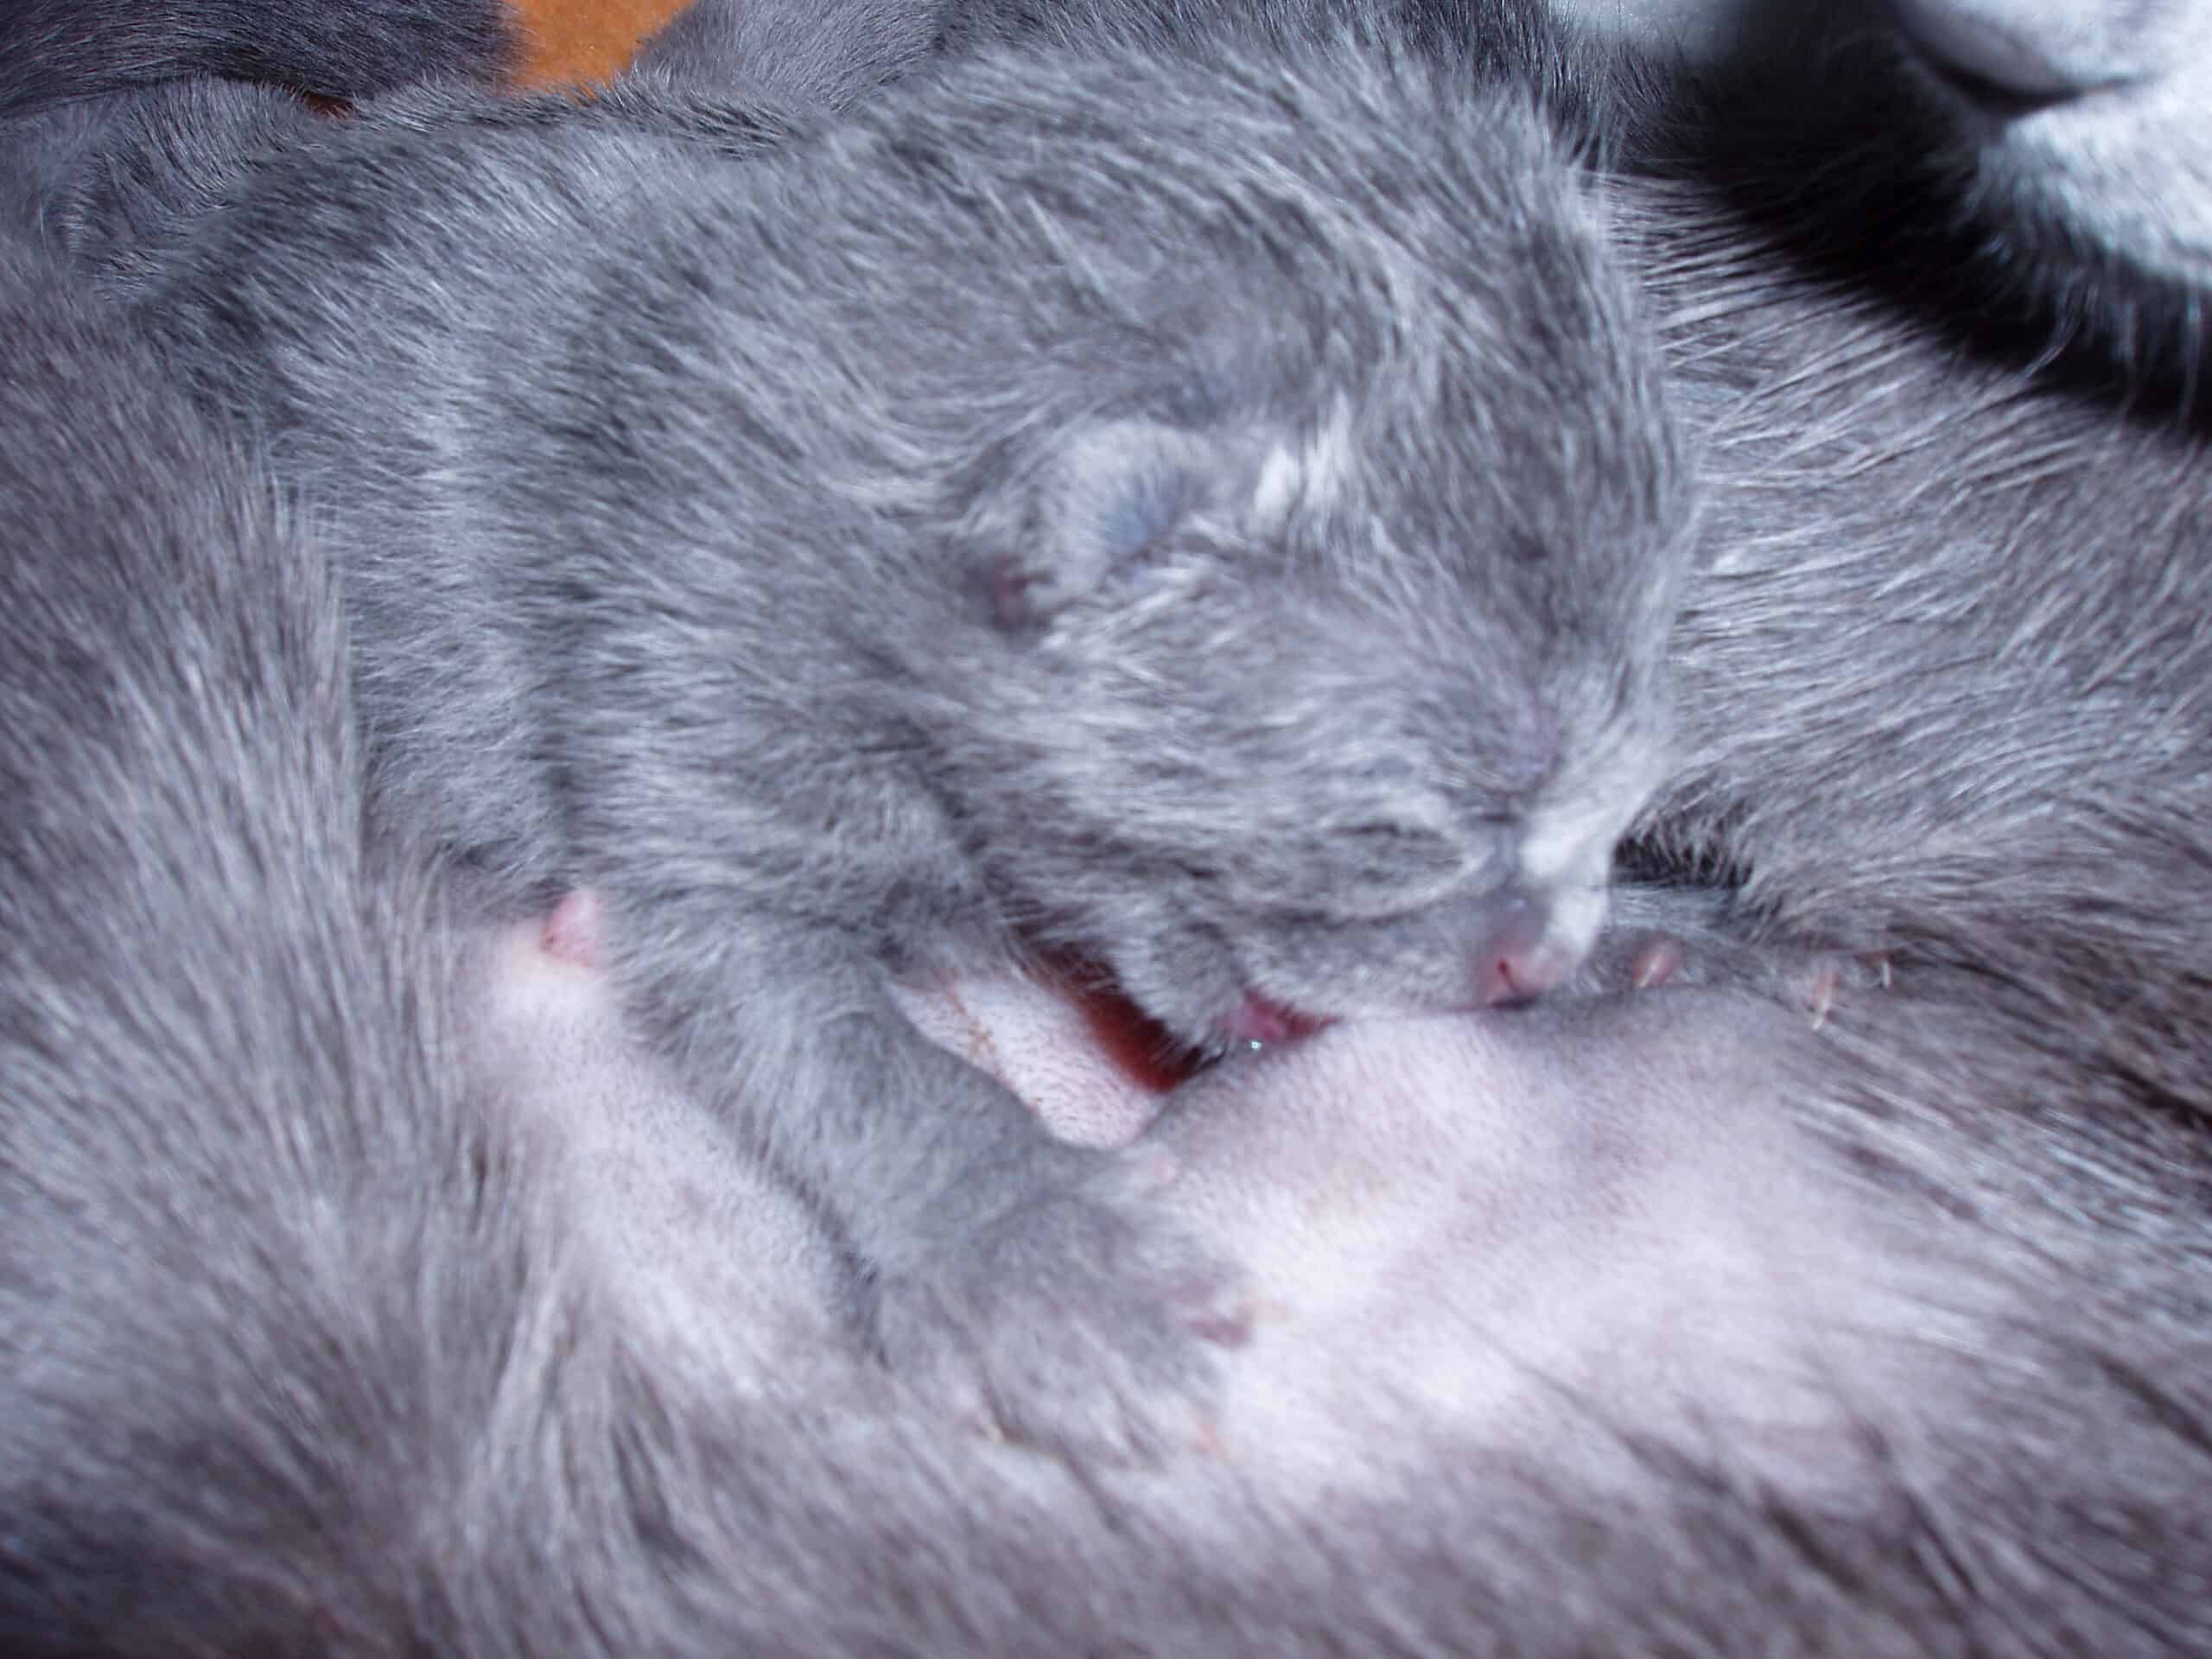 En närbild på en kattunge som ammar sin mamma. Kattungen är nyfödd och dess ögon är fortfarande stängda.